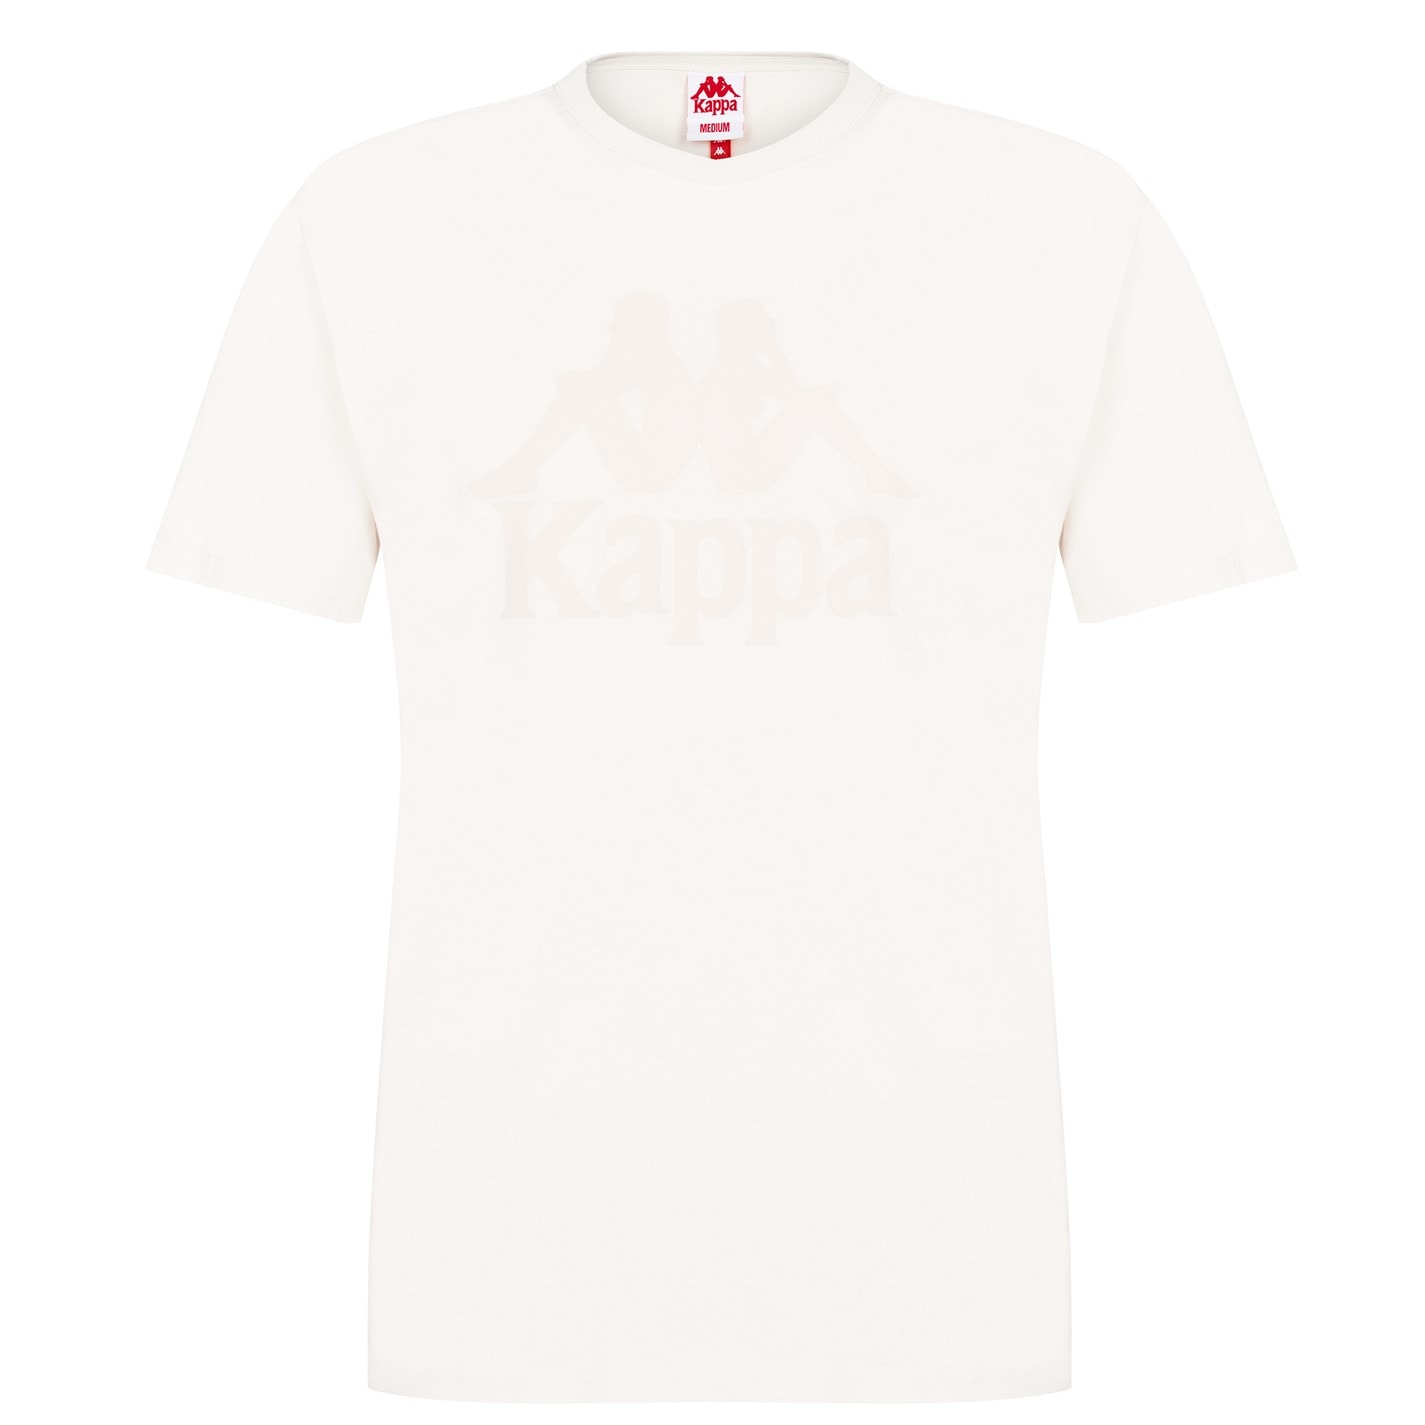 Tricou cu imprimeu Kappa Authentic pentru Barbati alb h15